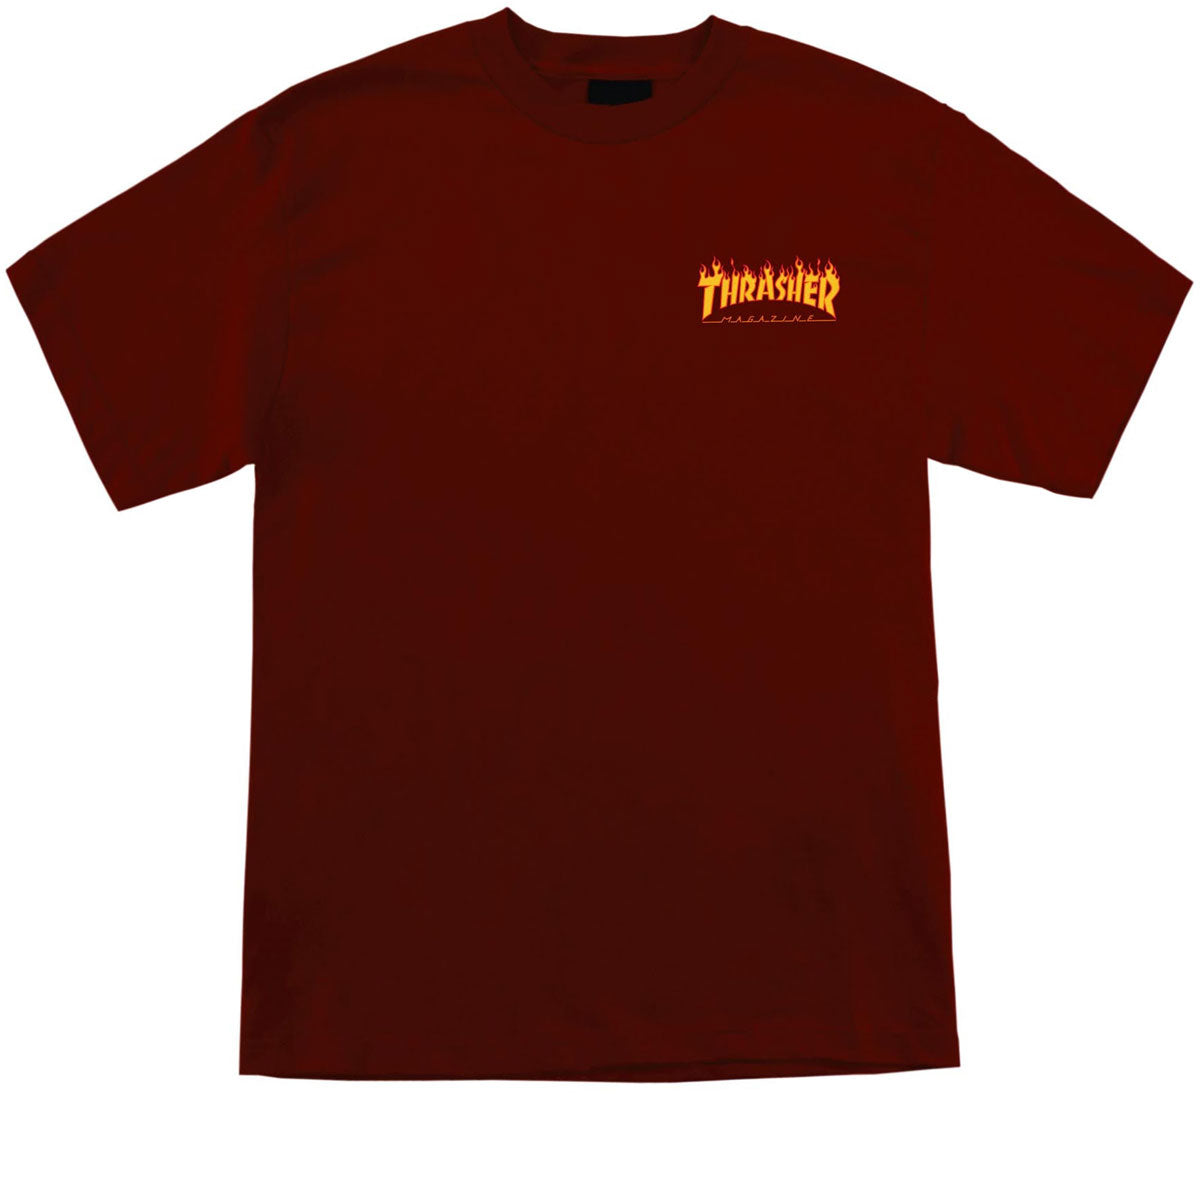 Santa Cruz x Thrasher Flame Dot T-Shirt - Burgundy image 2